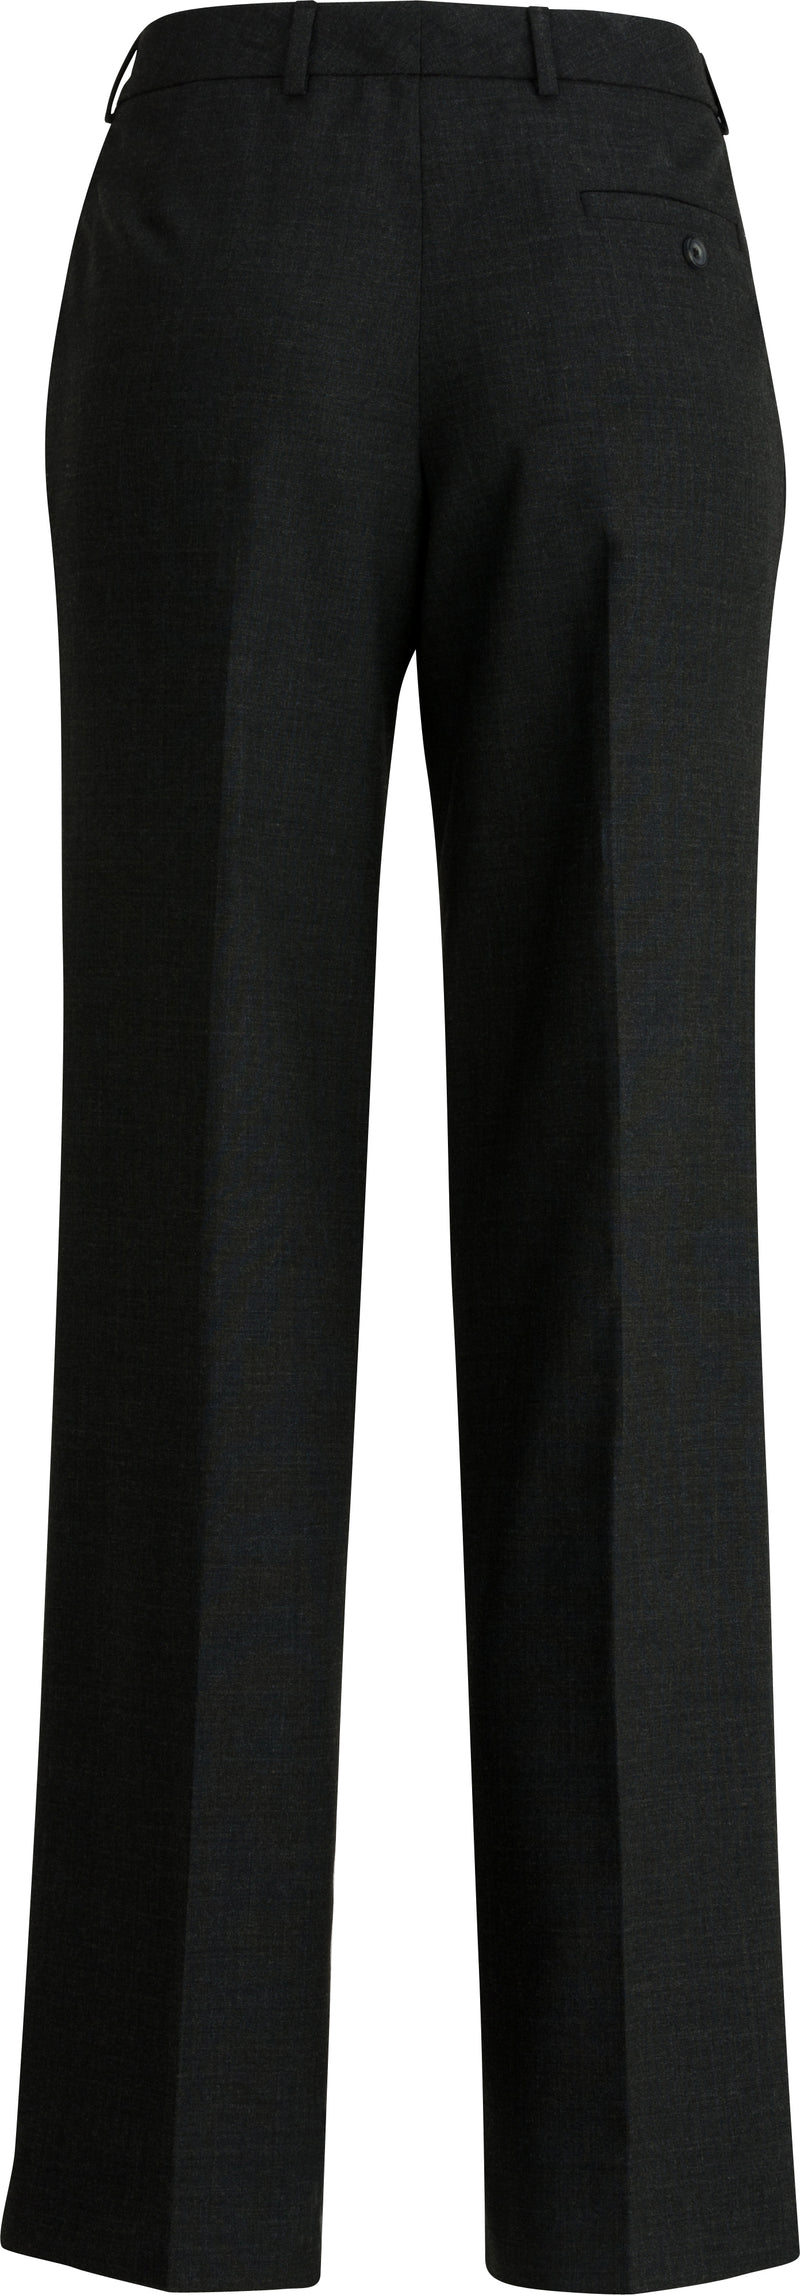 Edwards [8531] Ladies EZ Fit Flat-Front Dress Pant. Redwood & Ross Signature Collection. Live Chat For Bulk Discounts.